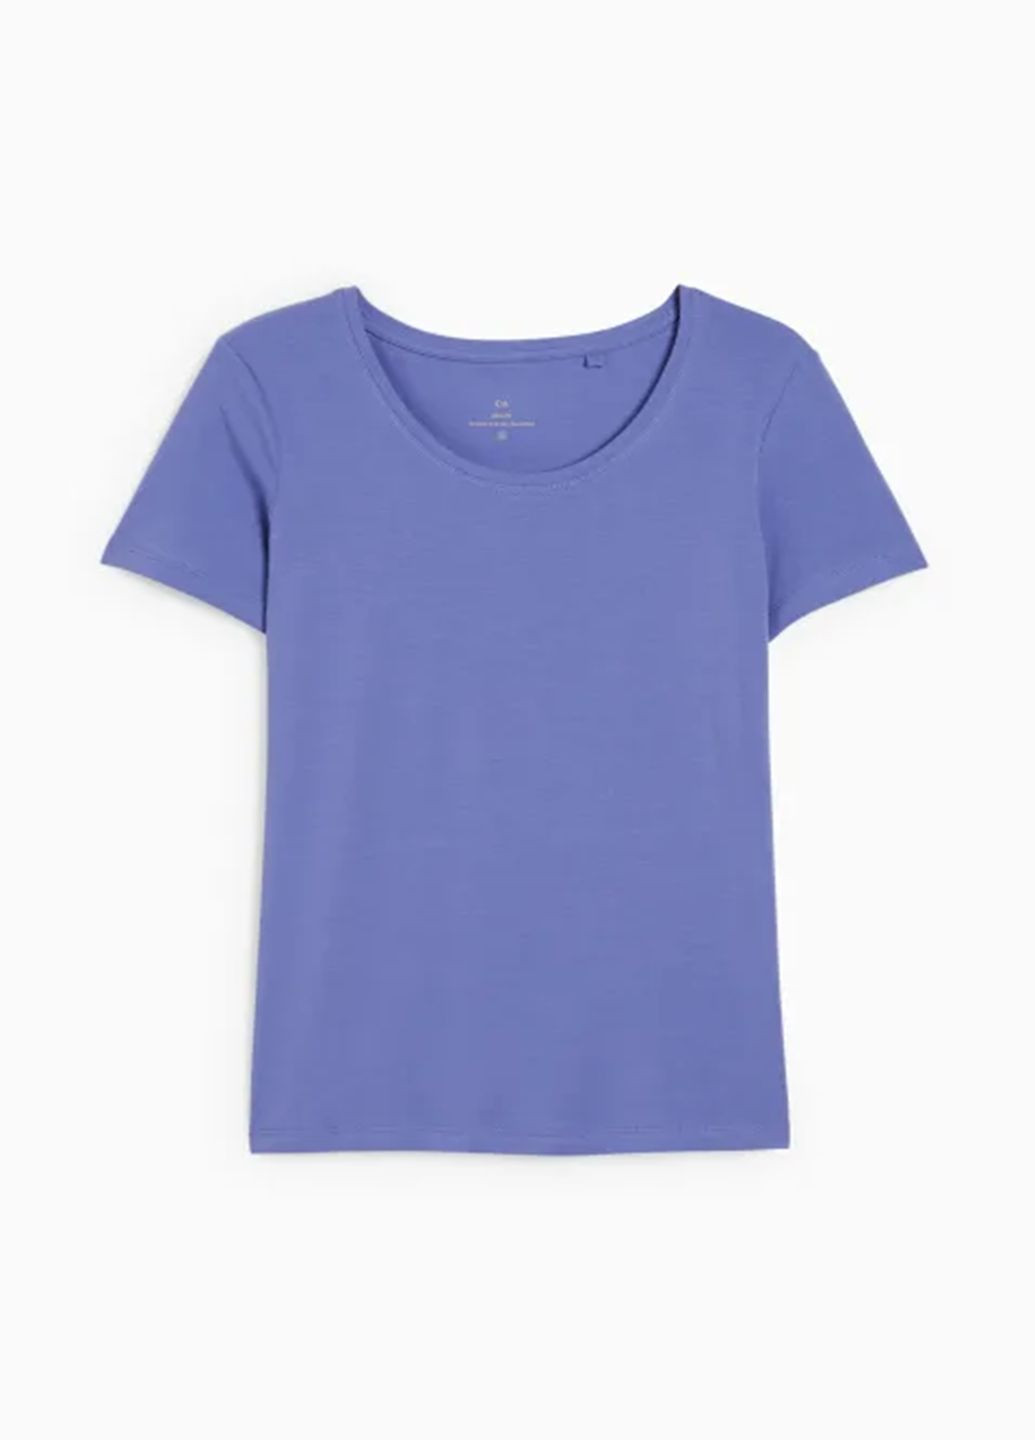 Фиолетовая летняя футболка C&A